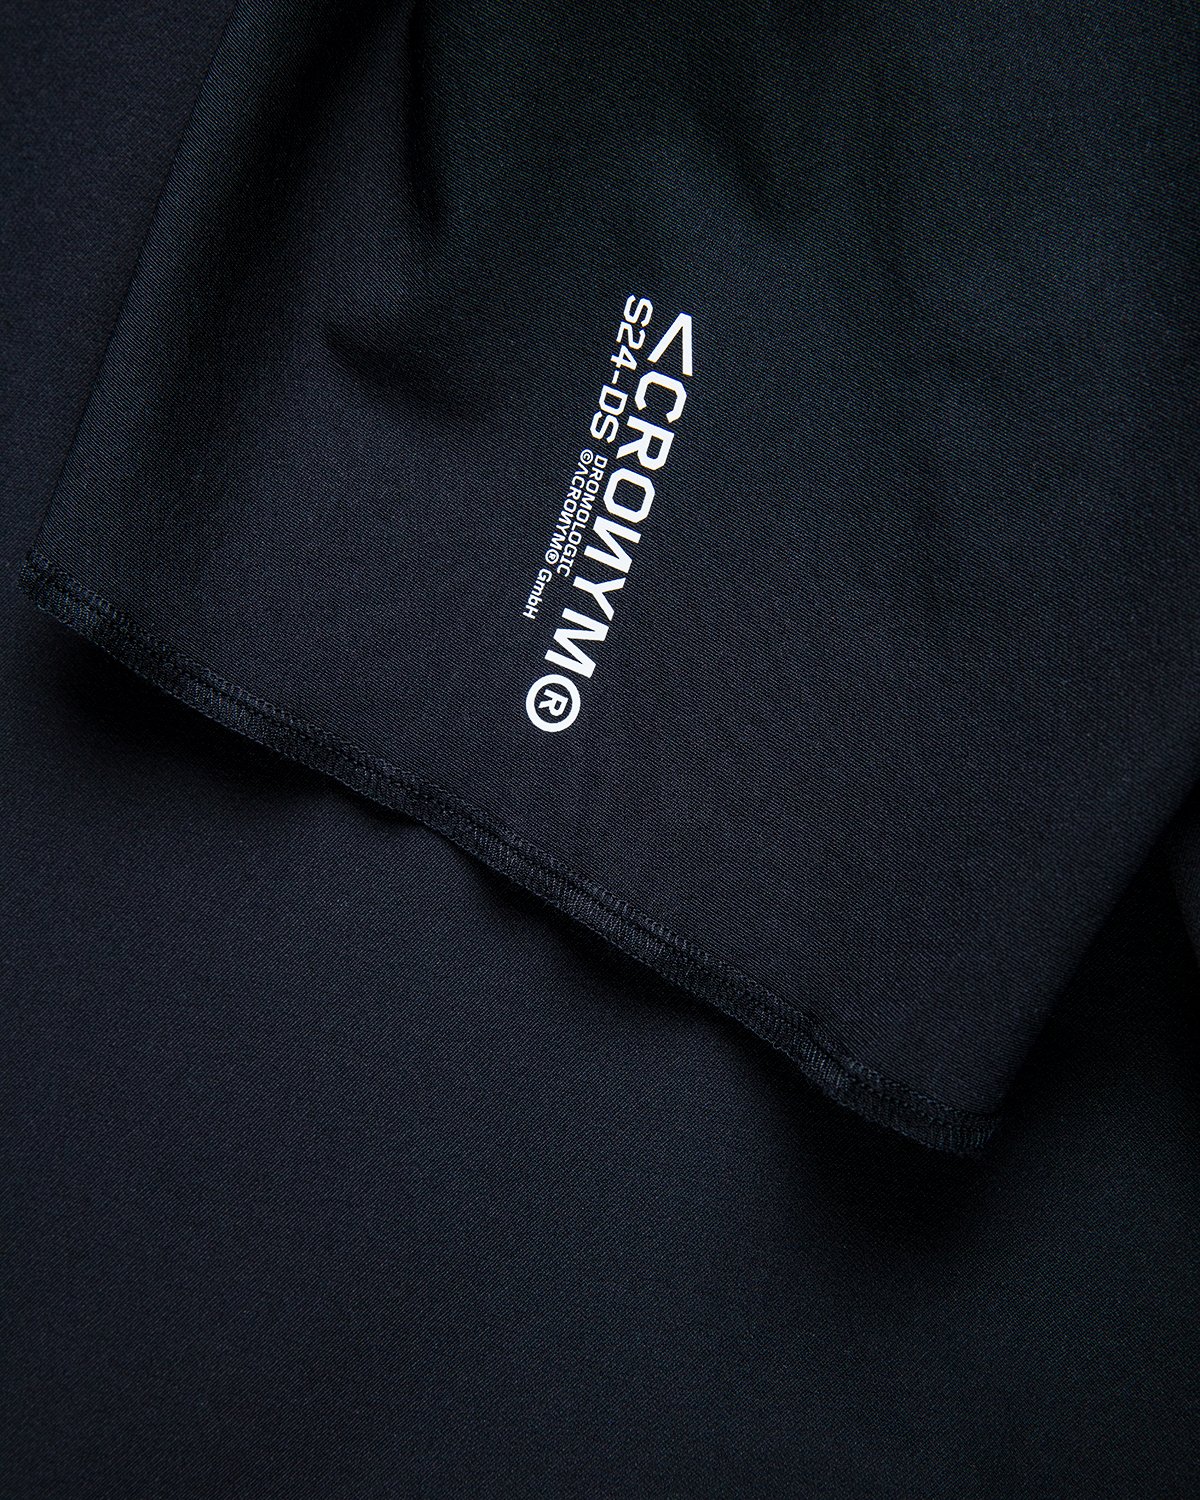 ACRONYM - S24-DS Short Sleeve Black - Clothing - Black - Image 6